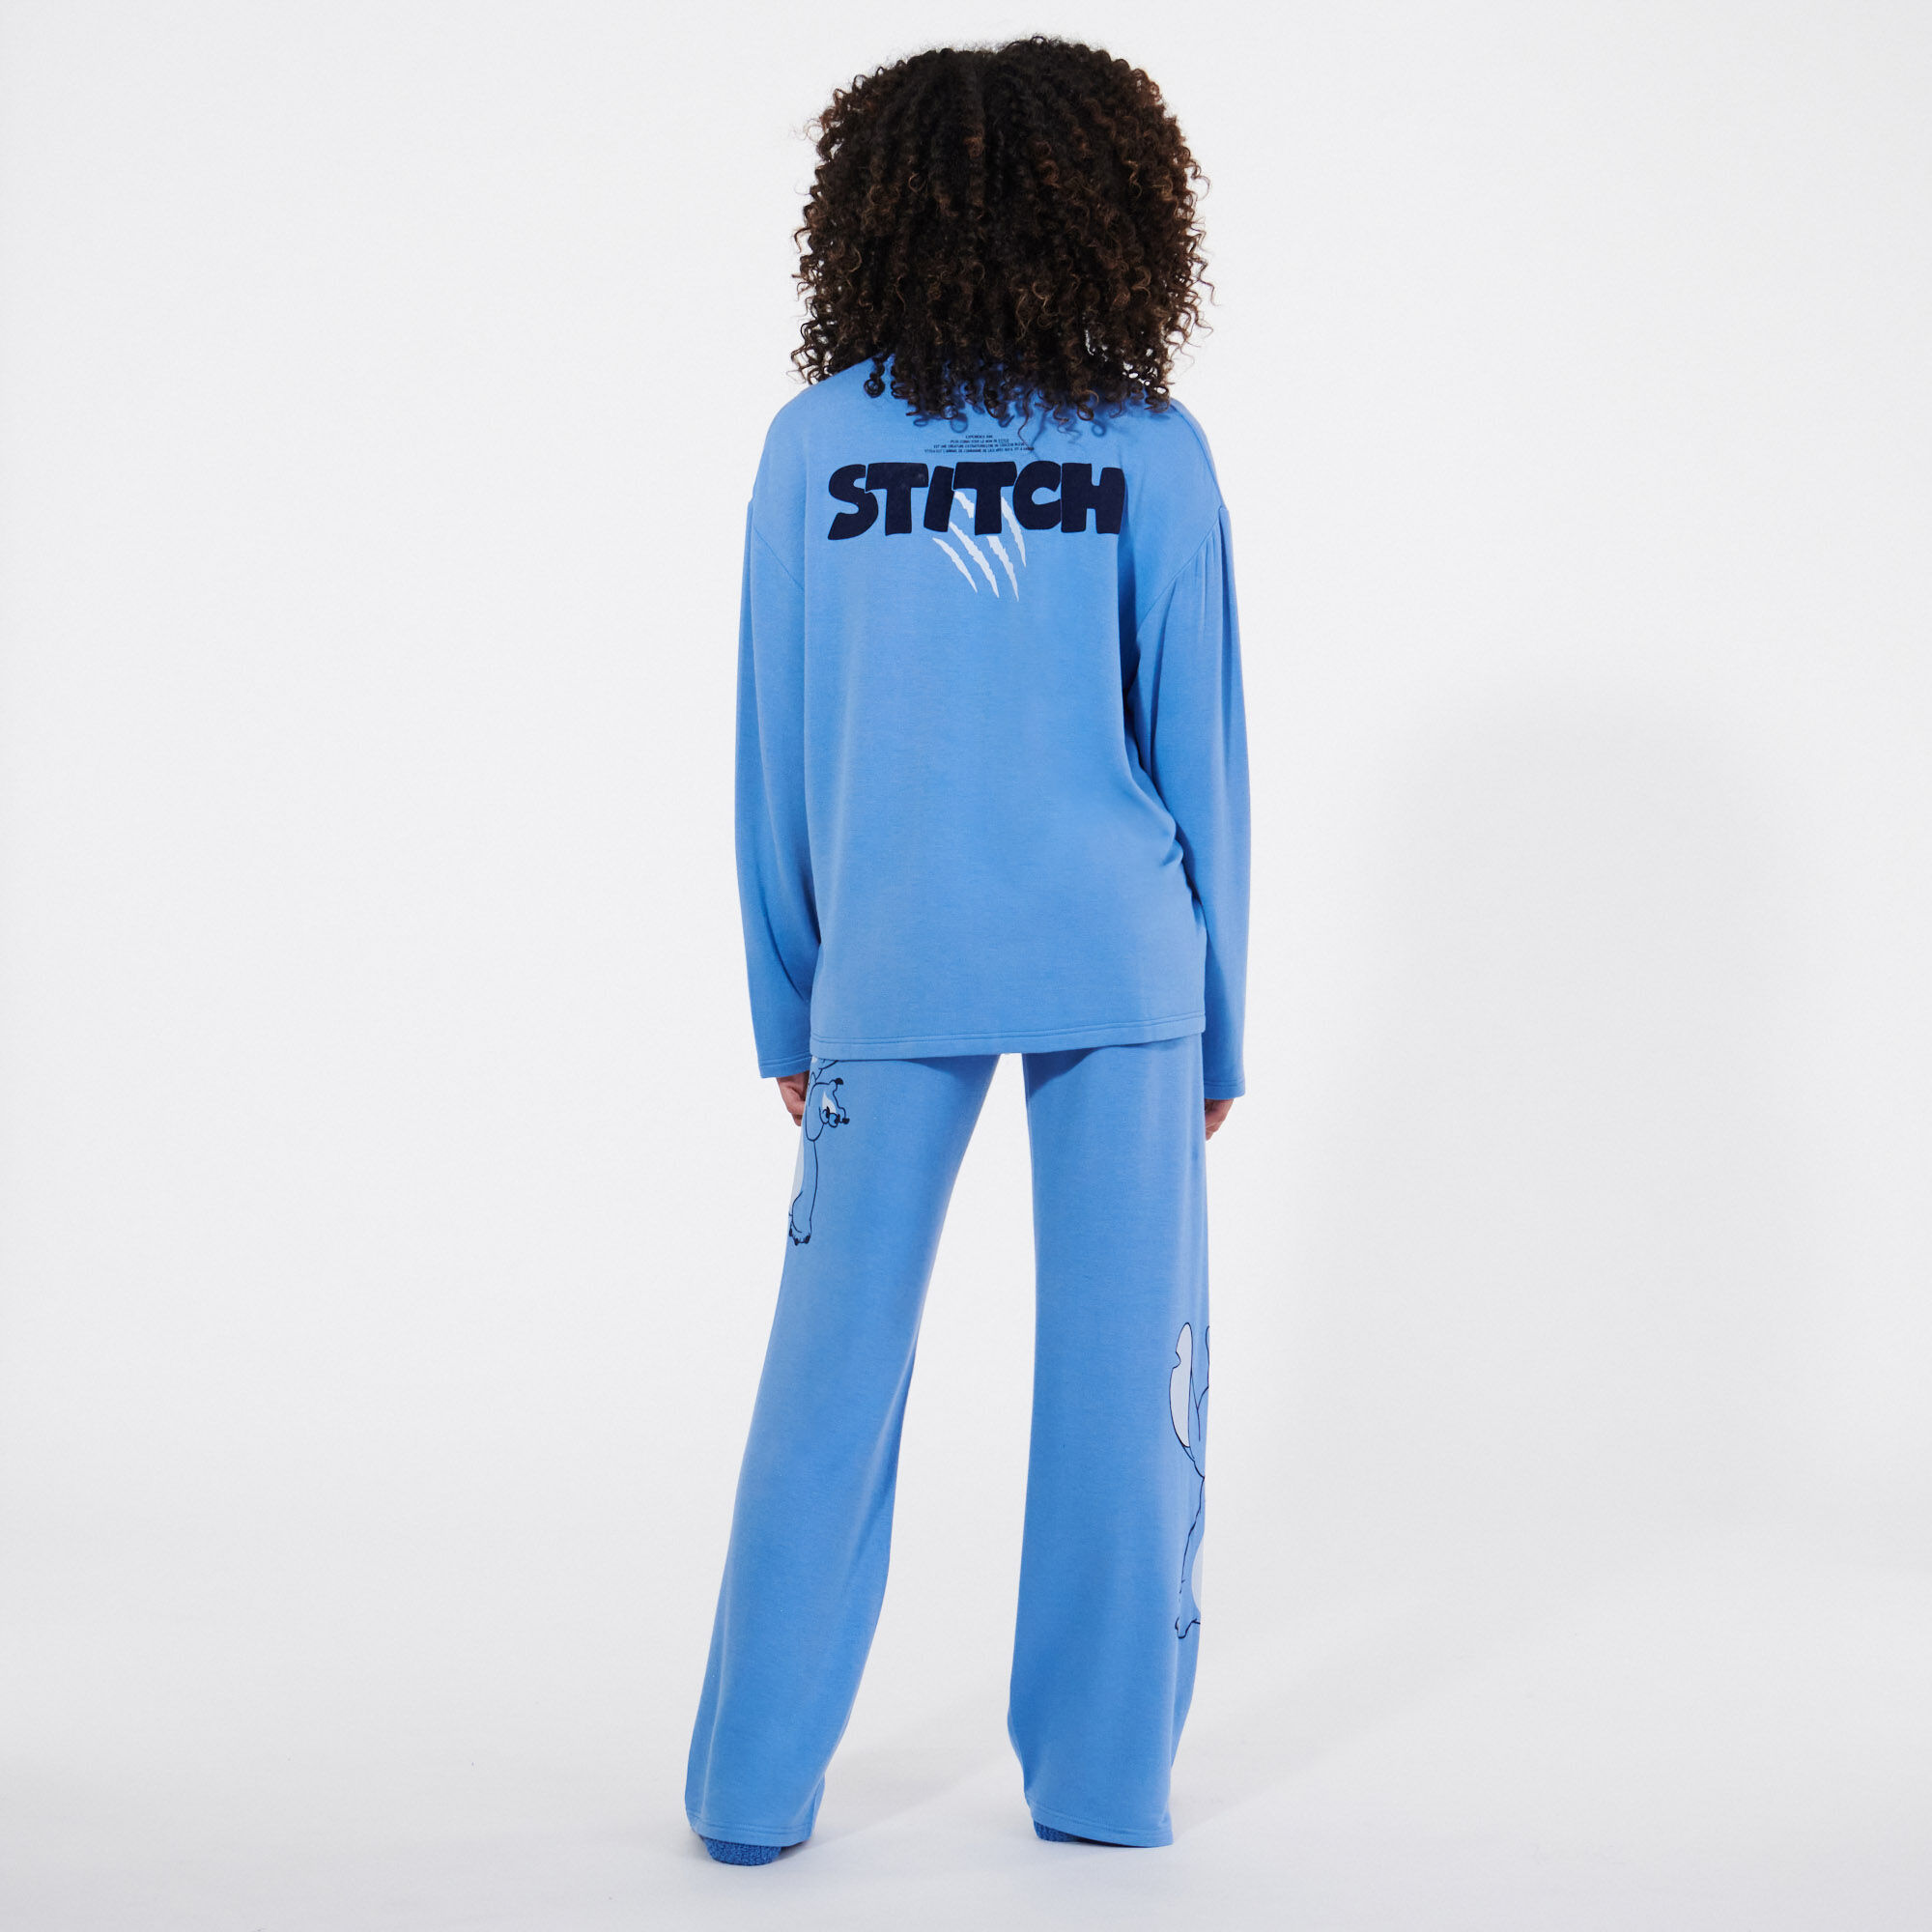 Stitch print pyjama bottoms